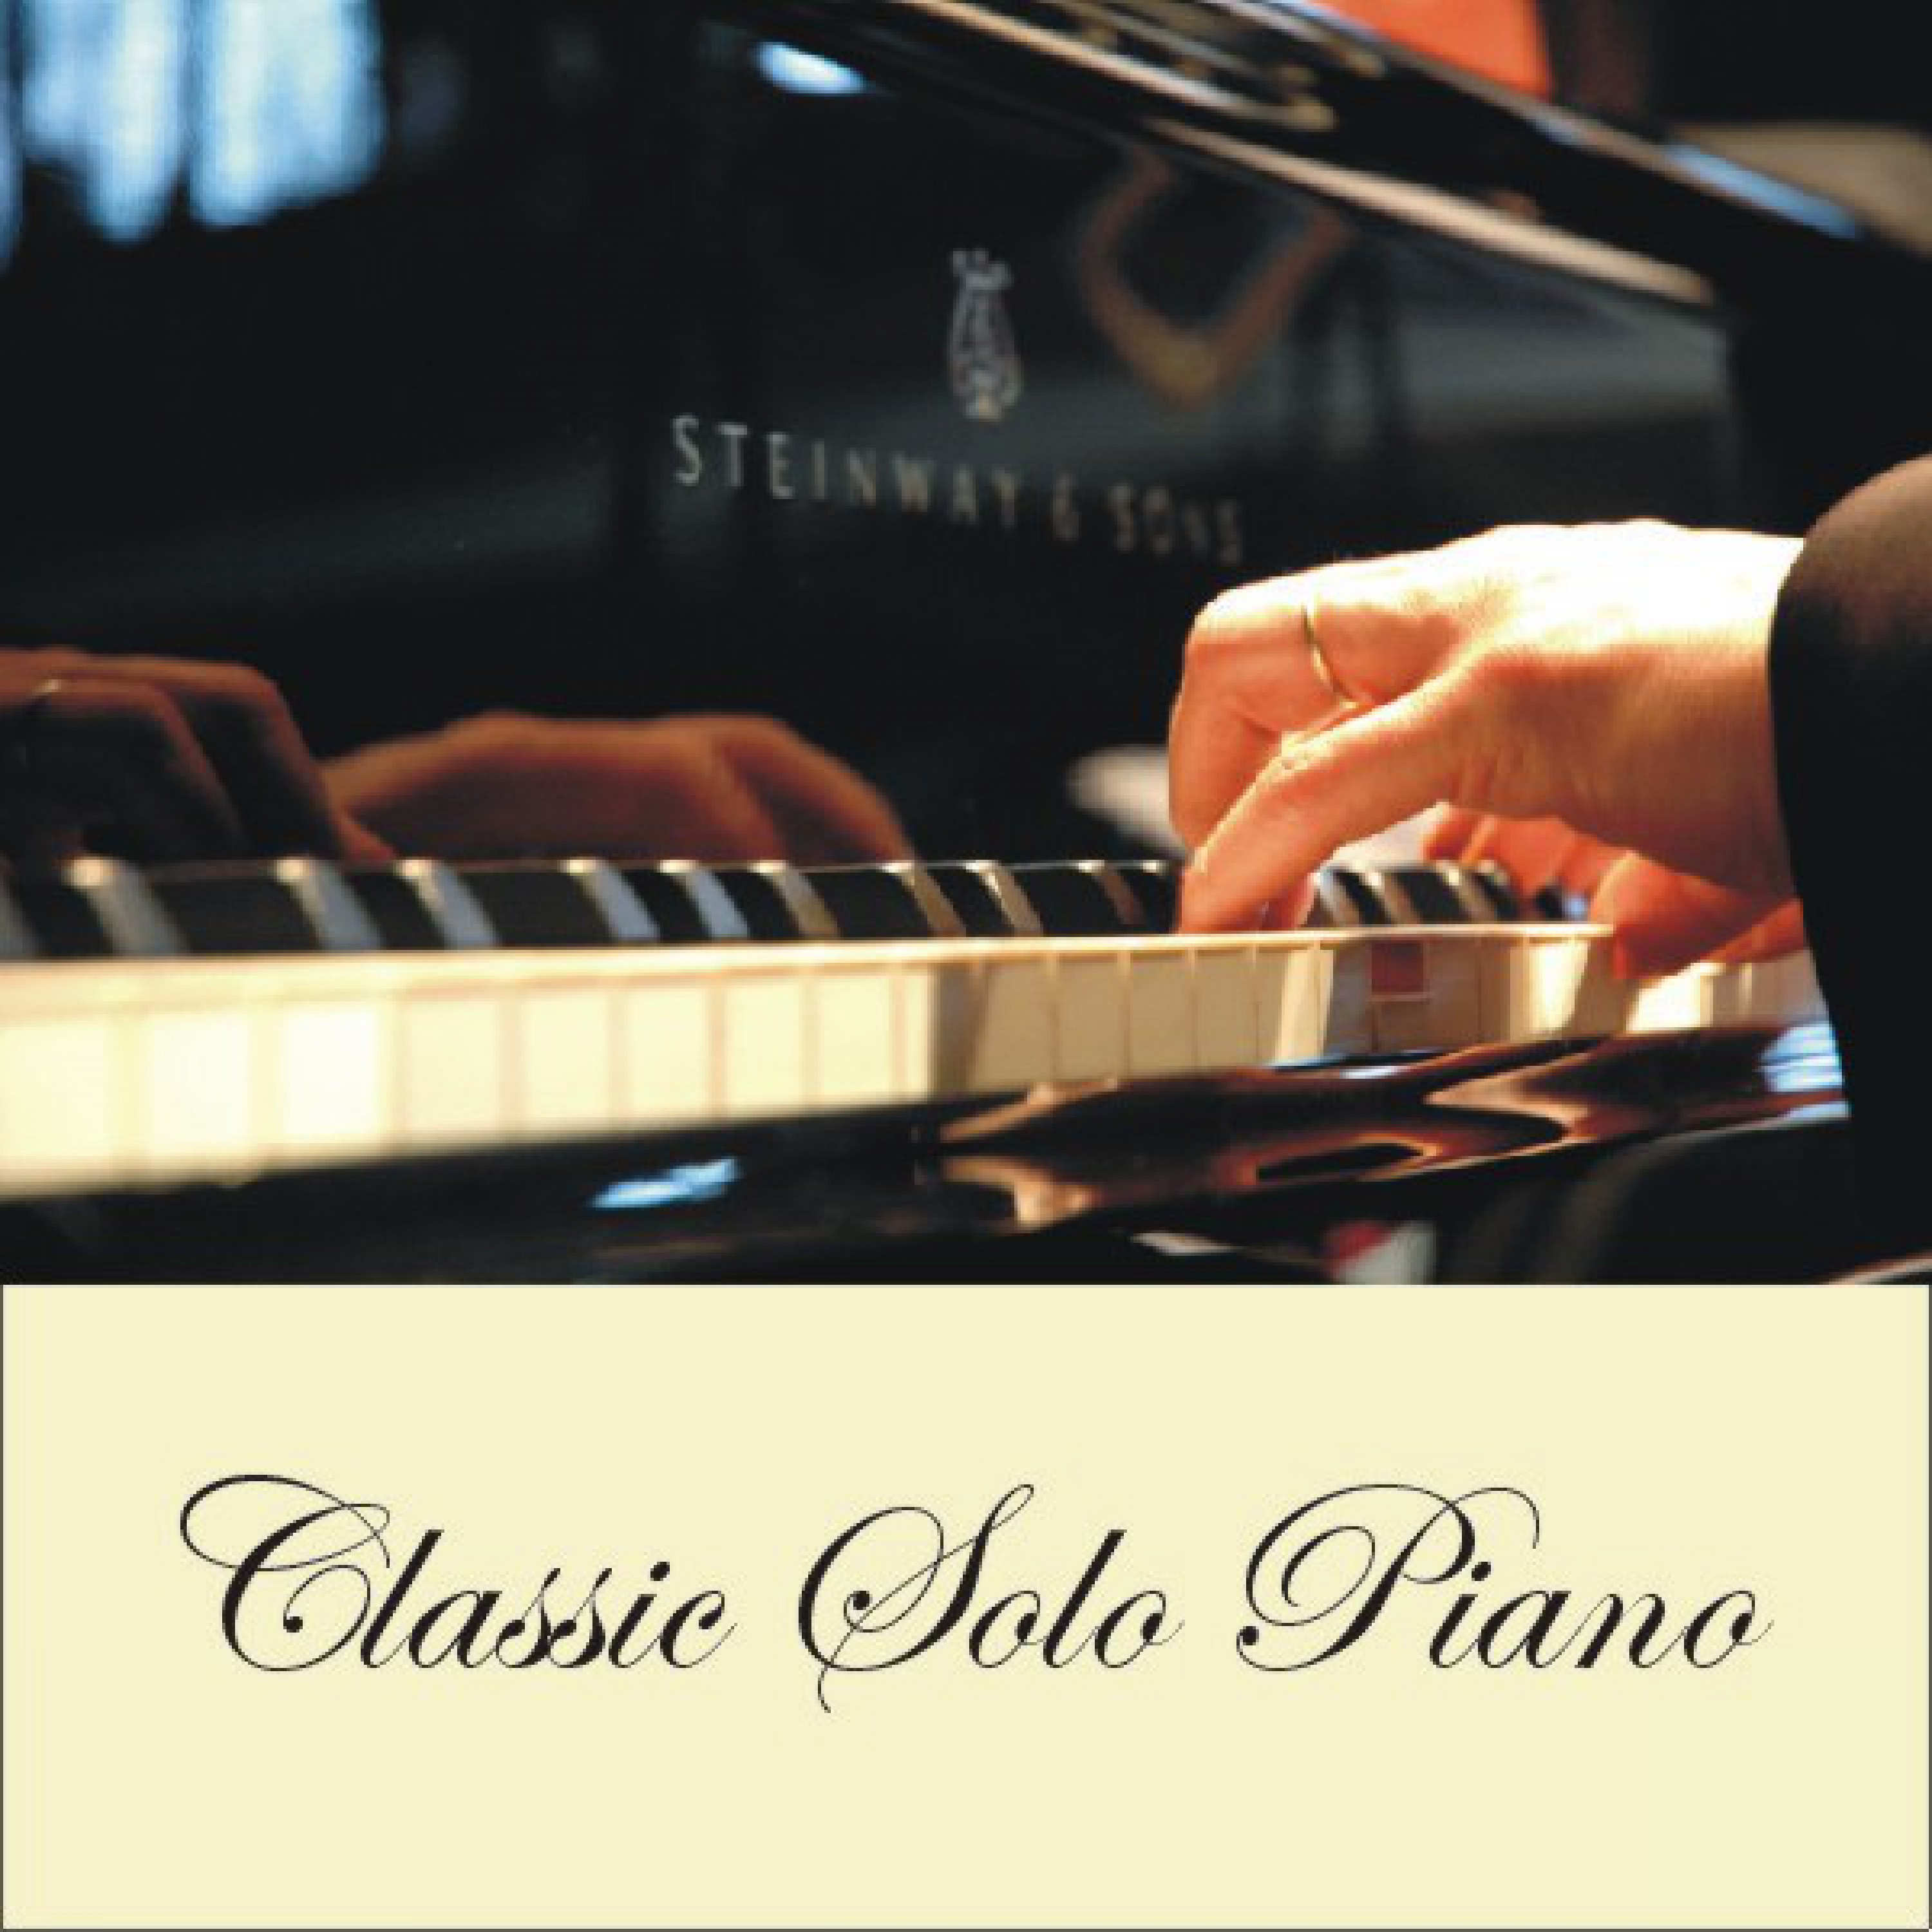 Classic Solo Piano